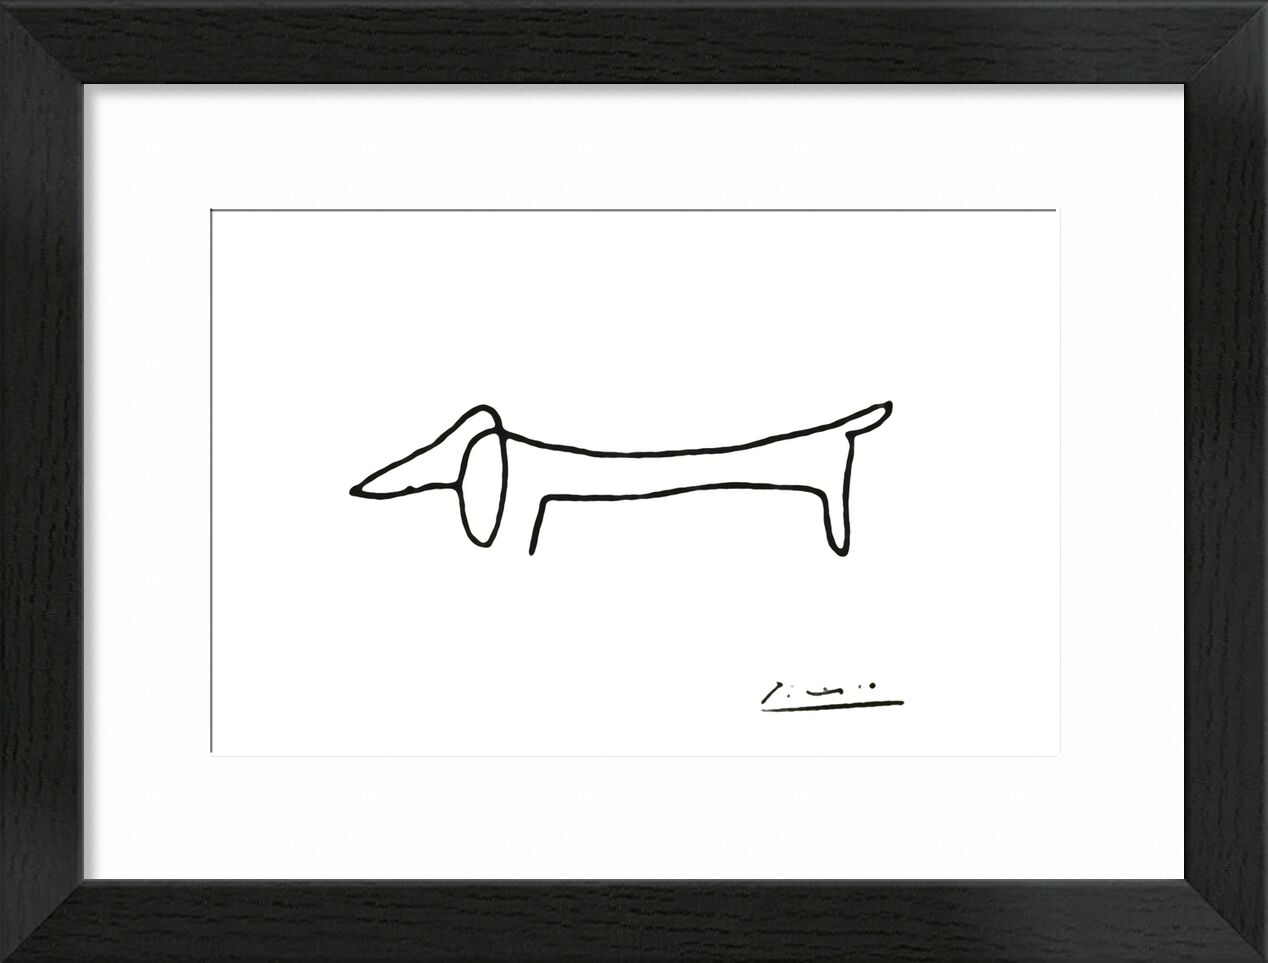 The dog - PABLO PICASSO von Bildende Kunst, Prodi Art, Zeichnung, Bleistiftzeichnung, Linie, Schwarz und weiß, PABLO PICASSO, Hund, eine Linie